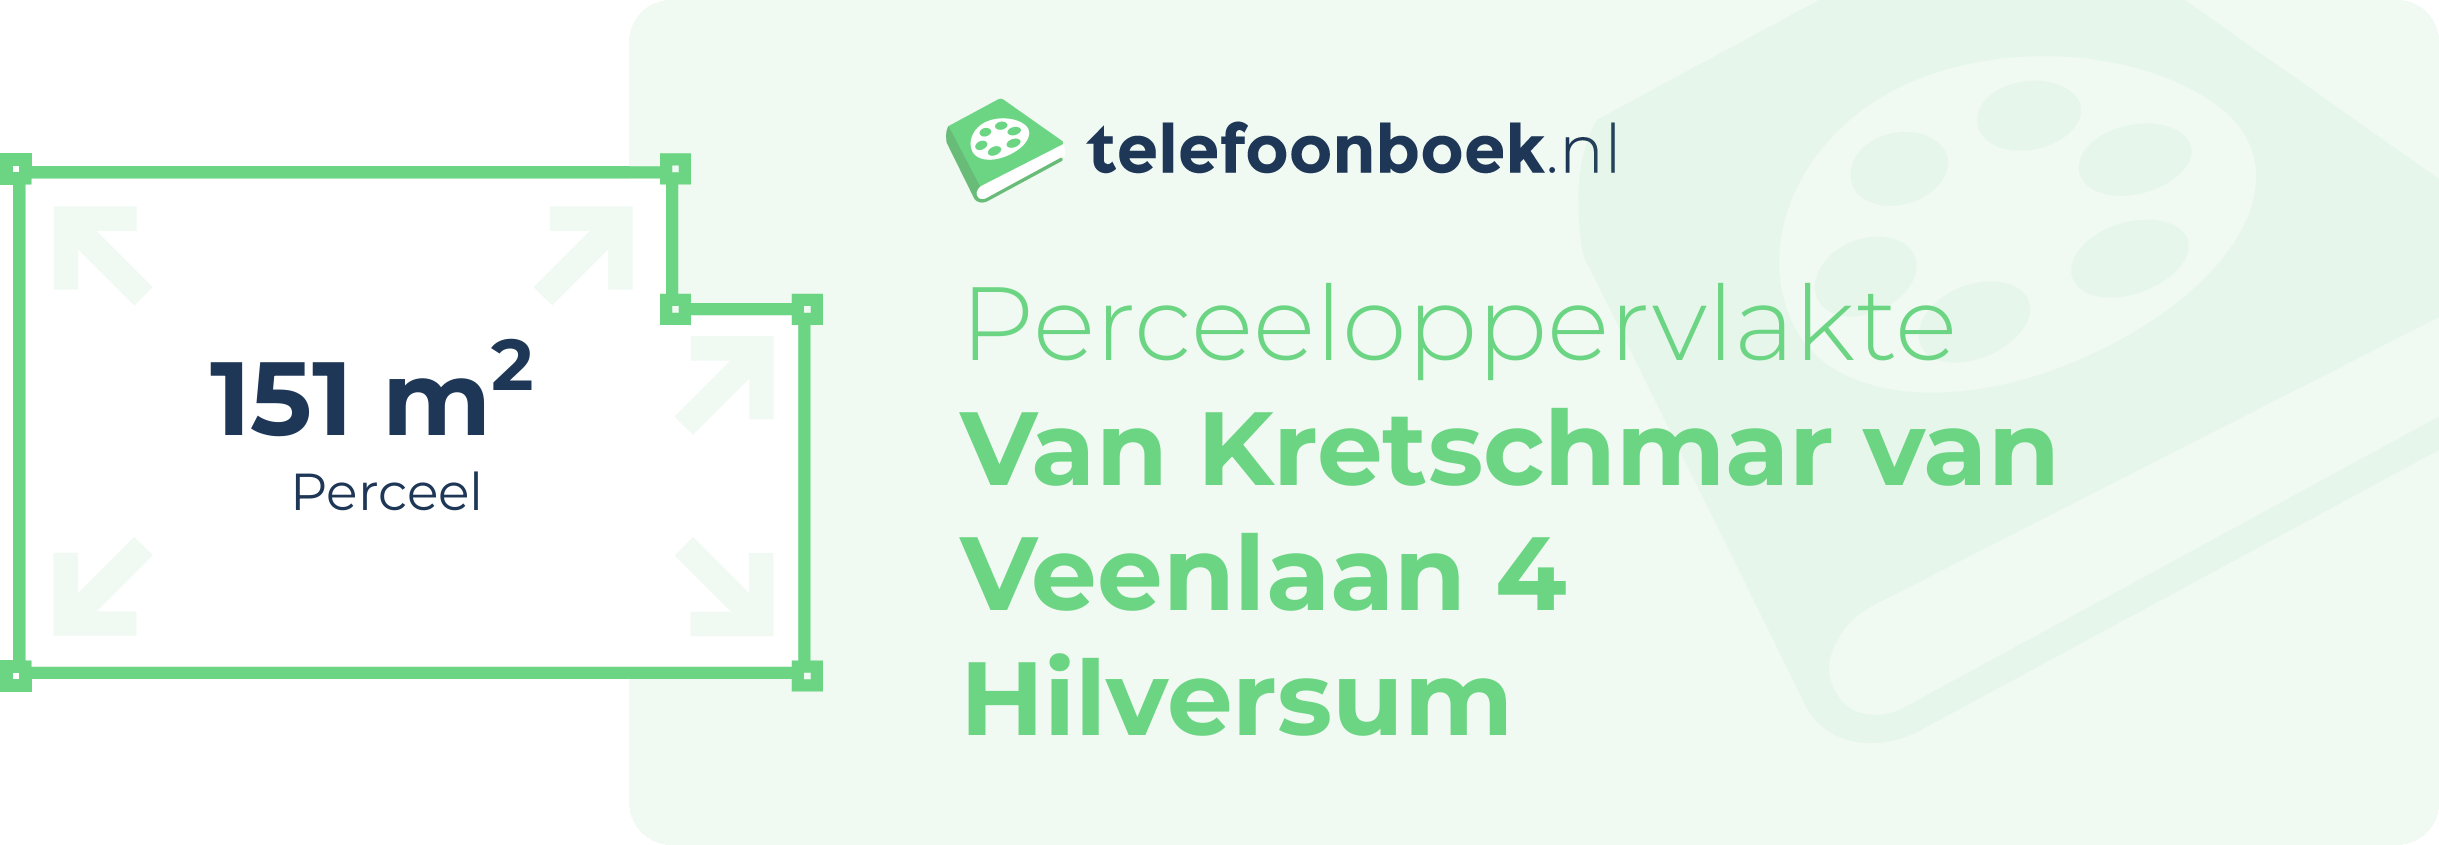 Perceeloppervlakte Van Kretschmar Van Veenlaan 4 Hilversum